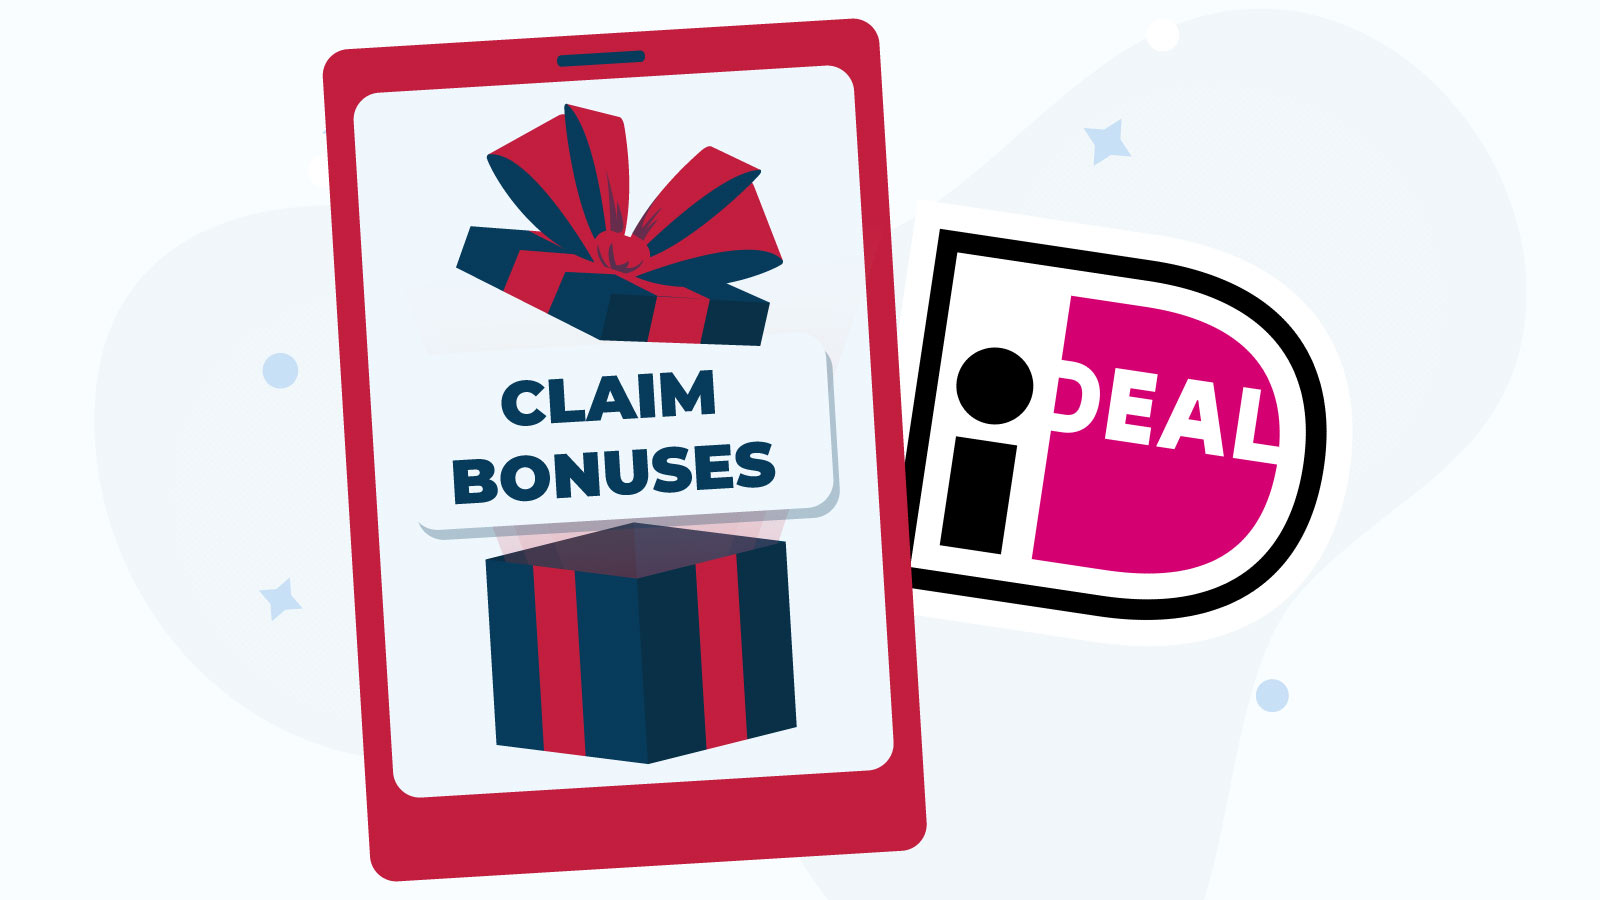 Can you claim bonuses with an iDeal Card